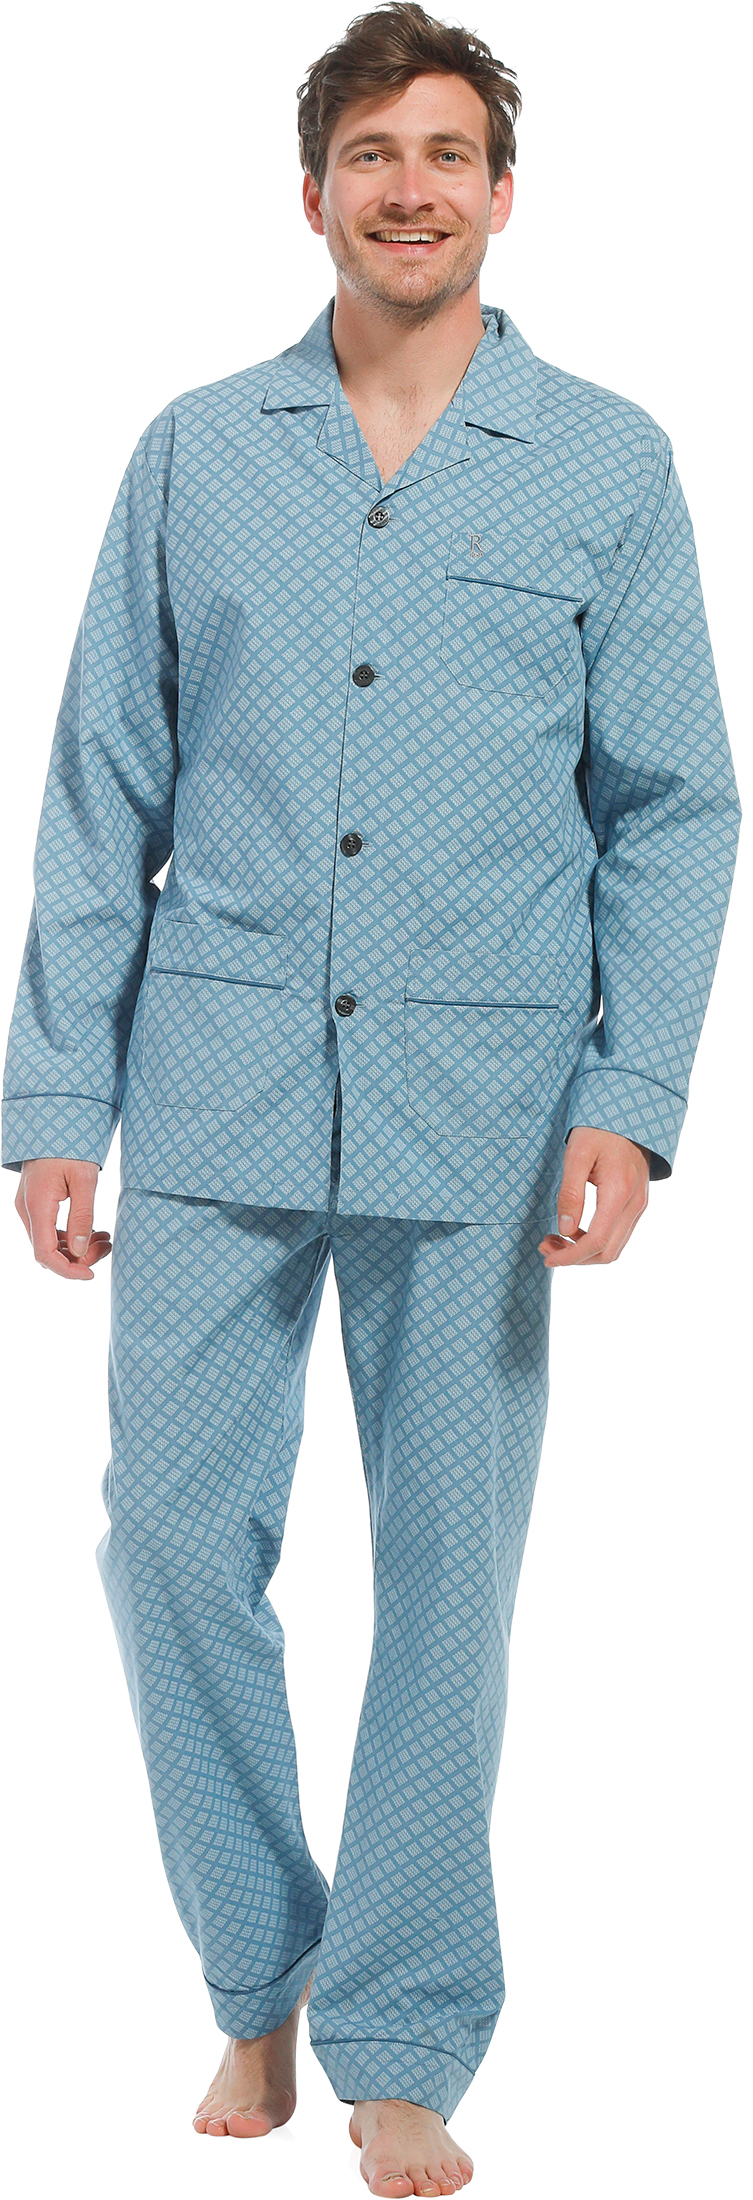 Robson heren pyjama doorknoop 27221-702-6 - Turquoise - XL/54